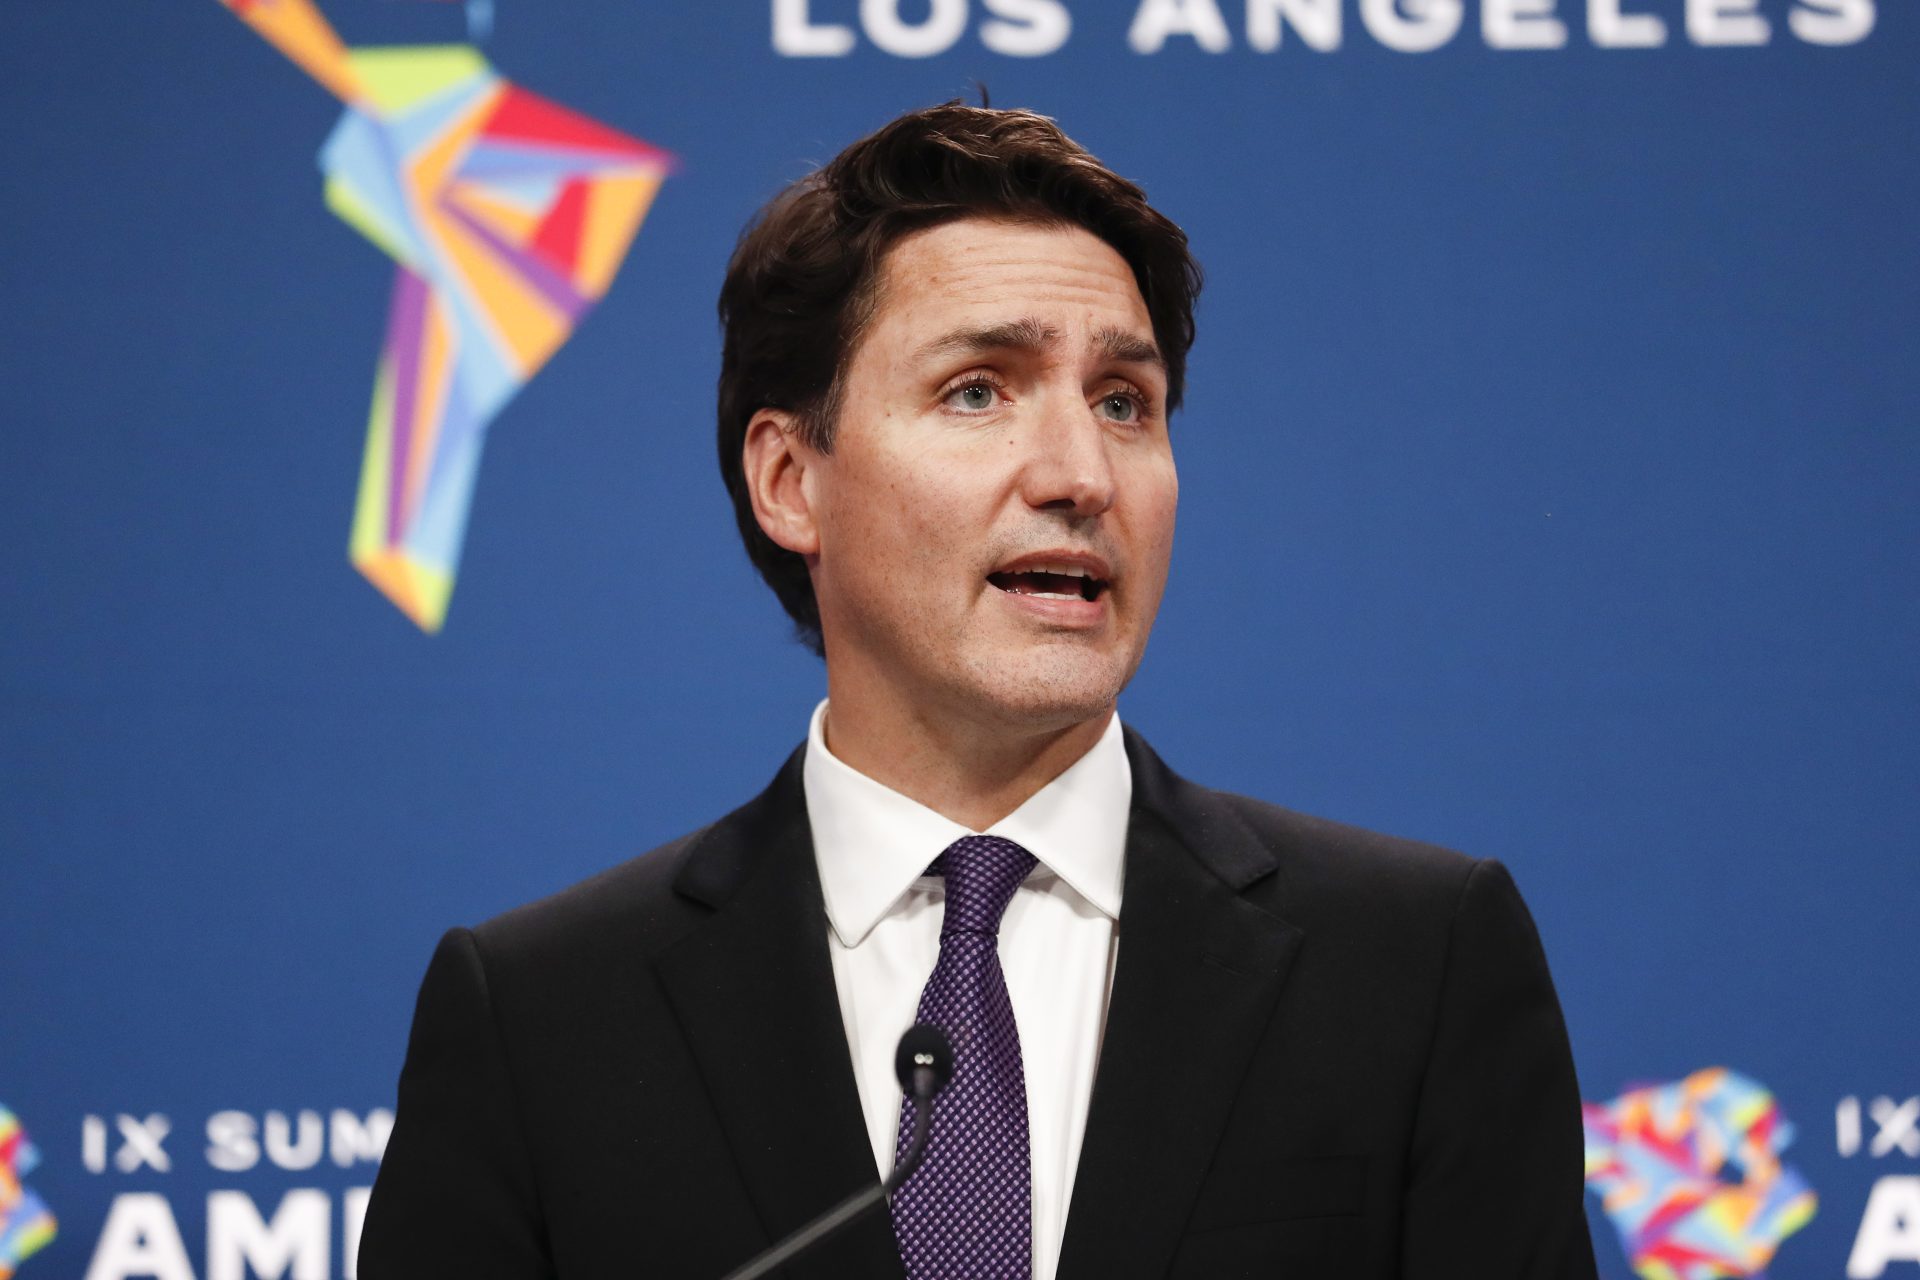 Zvezda poznate serije planirala je atentat na kanadskog premijera